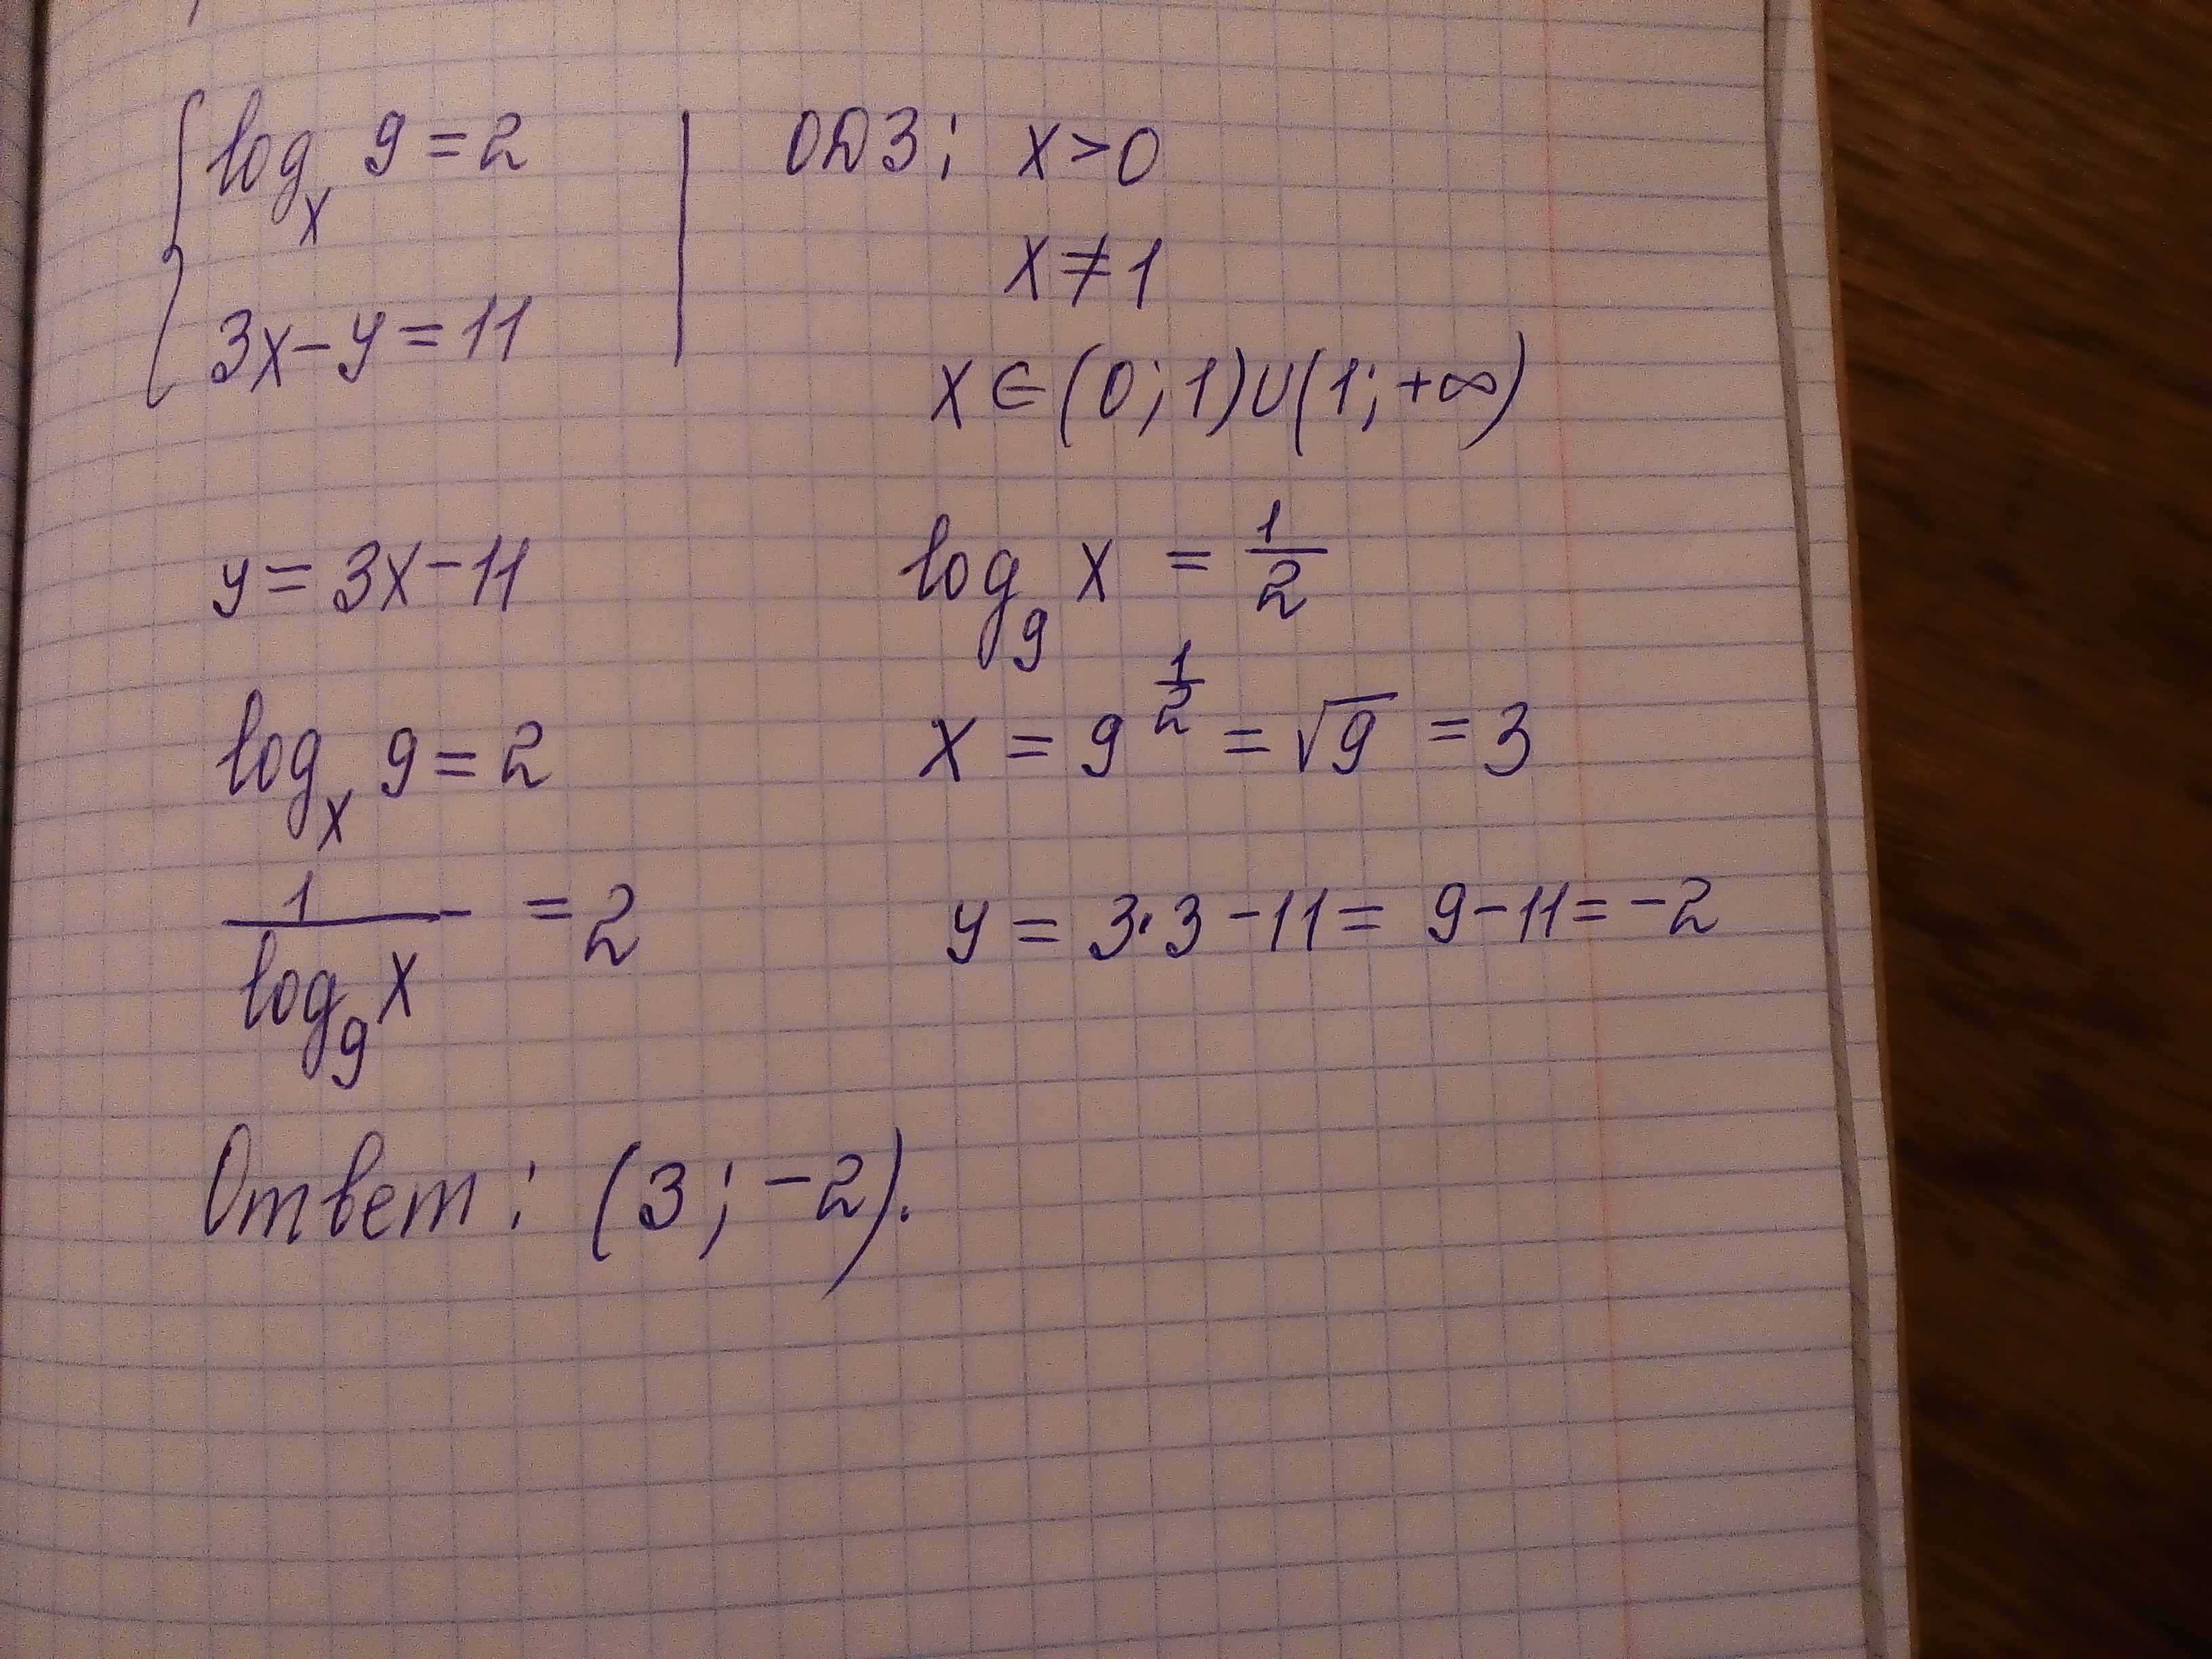 Y 11 4x 23. 2x+11y=15 10x-11y=9. Logx/3(logx корень из 3-x). 2x+11y 10x-11y. 2x+11y=15.